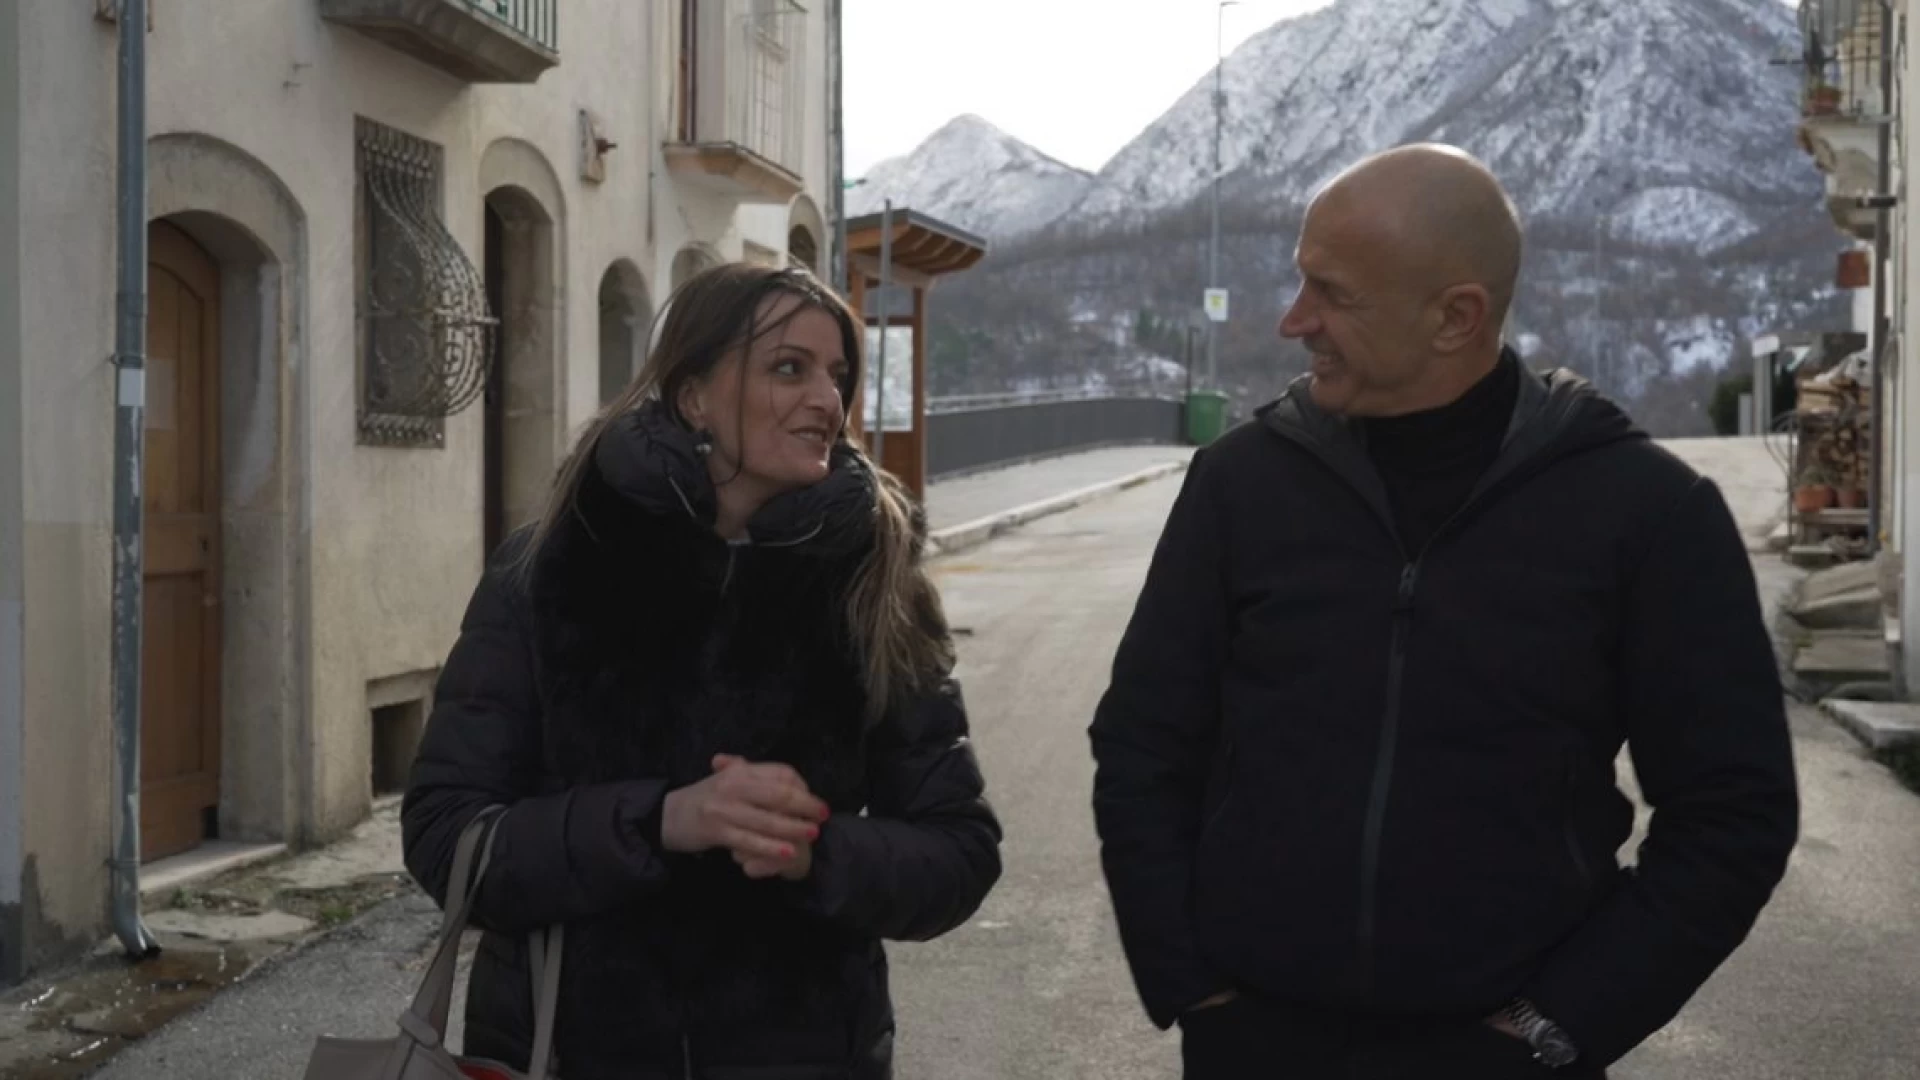 Pizzone: Letizia Di Iorio intervistata da Domenico Iannacone alla ribalta nazionale su RaiTre. Protagonista del programma “Che ci faccio qui”.